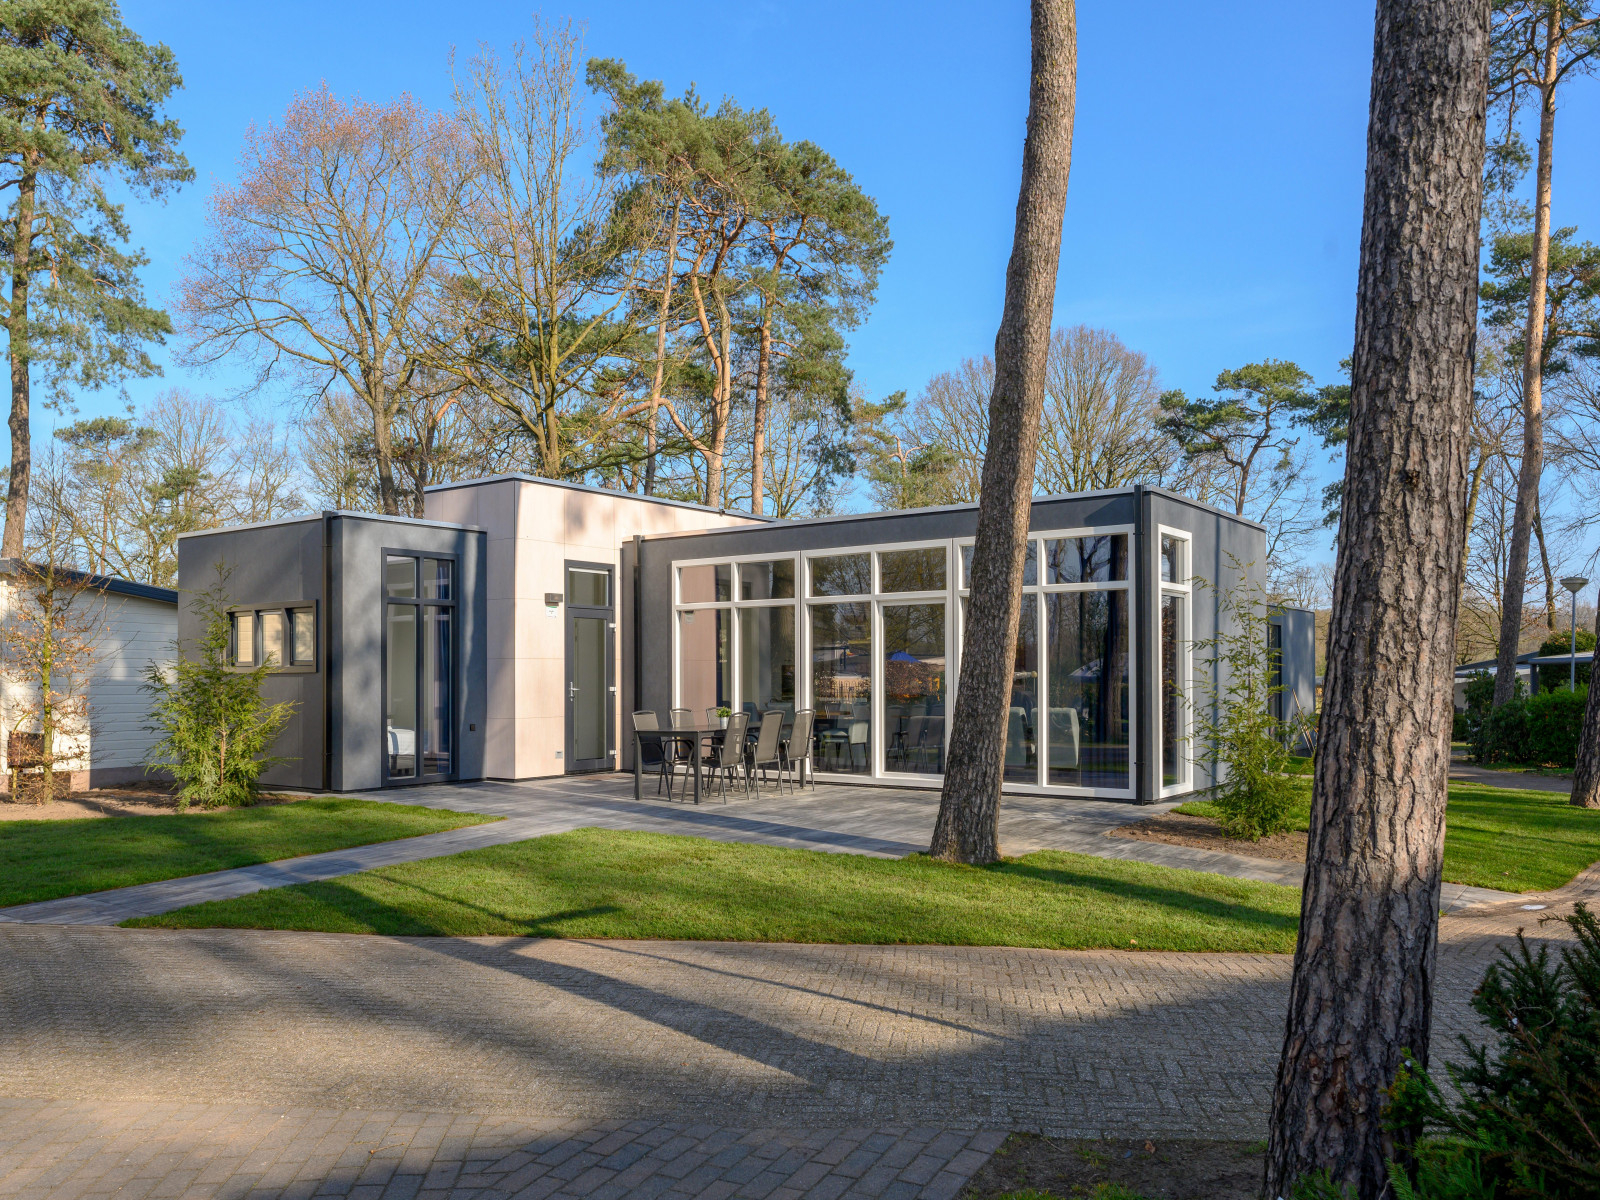 Luxe 6 persoons vakantiehuis nabij Voorthuizen op de Veluwe - Nederland - Europa - Voorthuizen